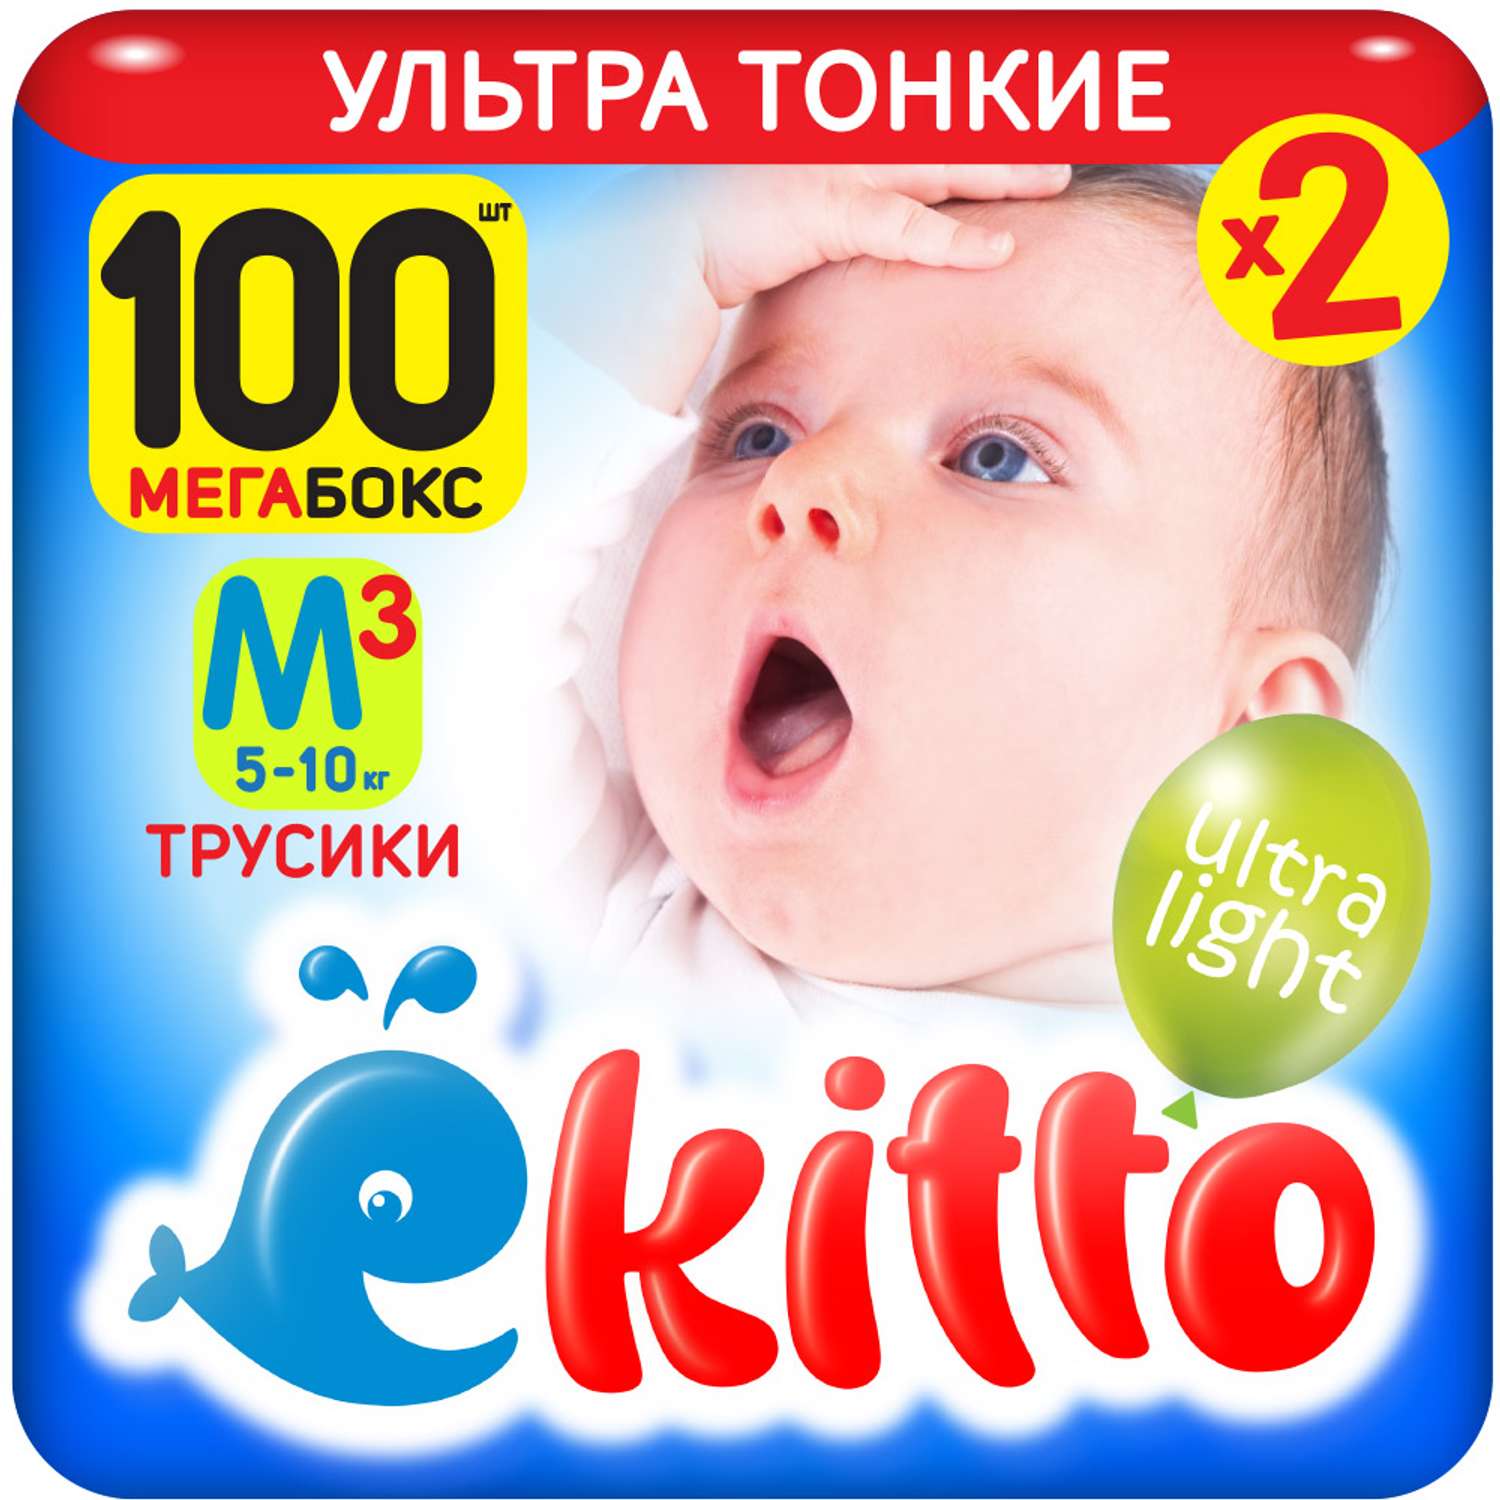 Подгузники-трусики Ekitto 3 размер M для новорожденных детей от 5-10 кг 100 шт - фото 1